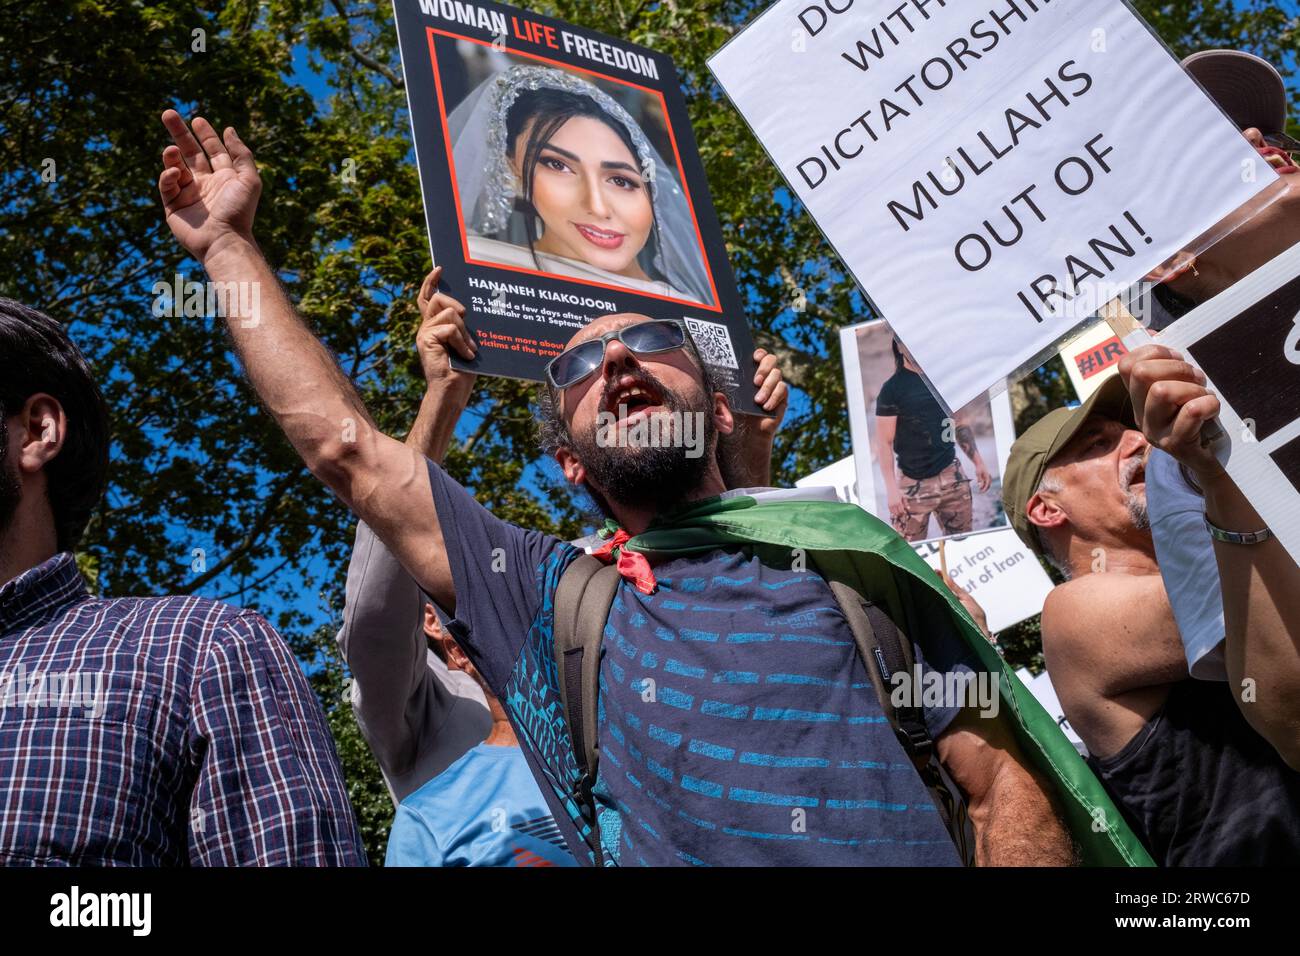 Am einjährigen Todestag von Mahsa Amini begeben sich britische Iraner auf die Straßen Londons, um gegen die iranische Regierung zu protestieren. Stockfoto